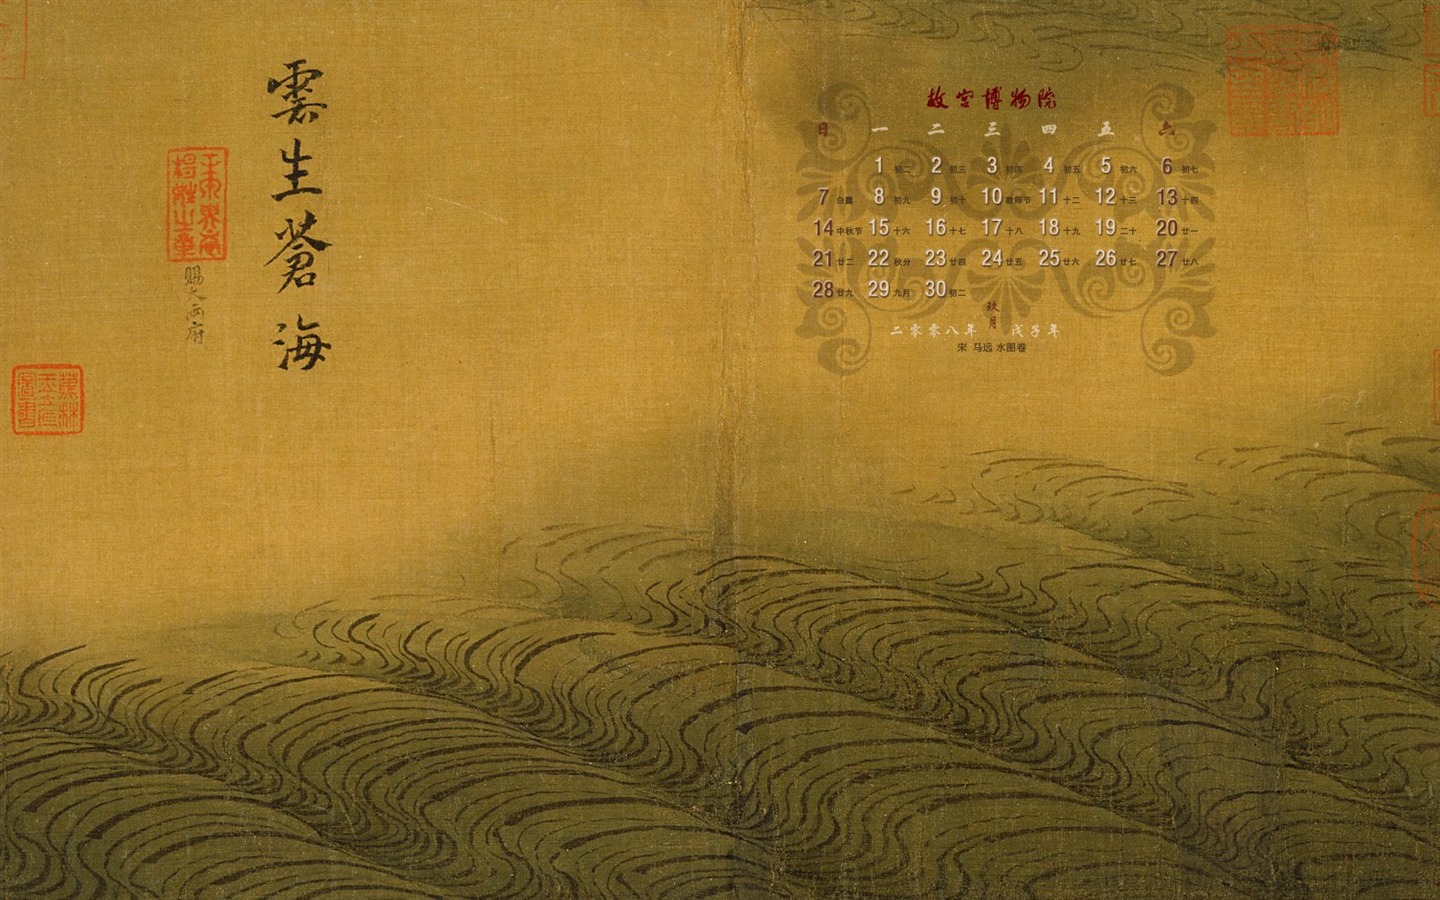 北京故宫博物院 文物展壁纸(二)15 - 1440x900